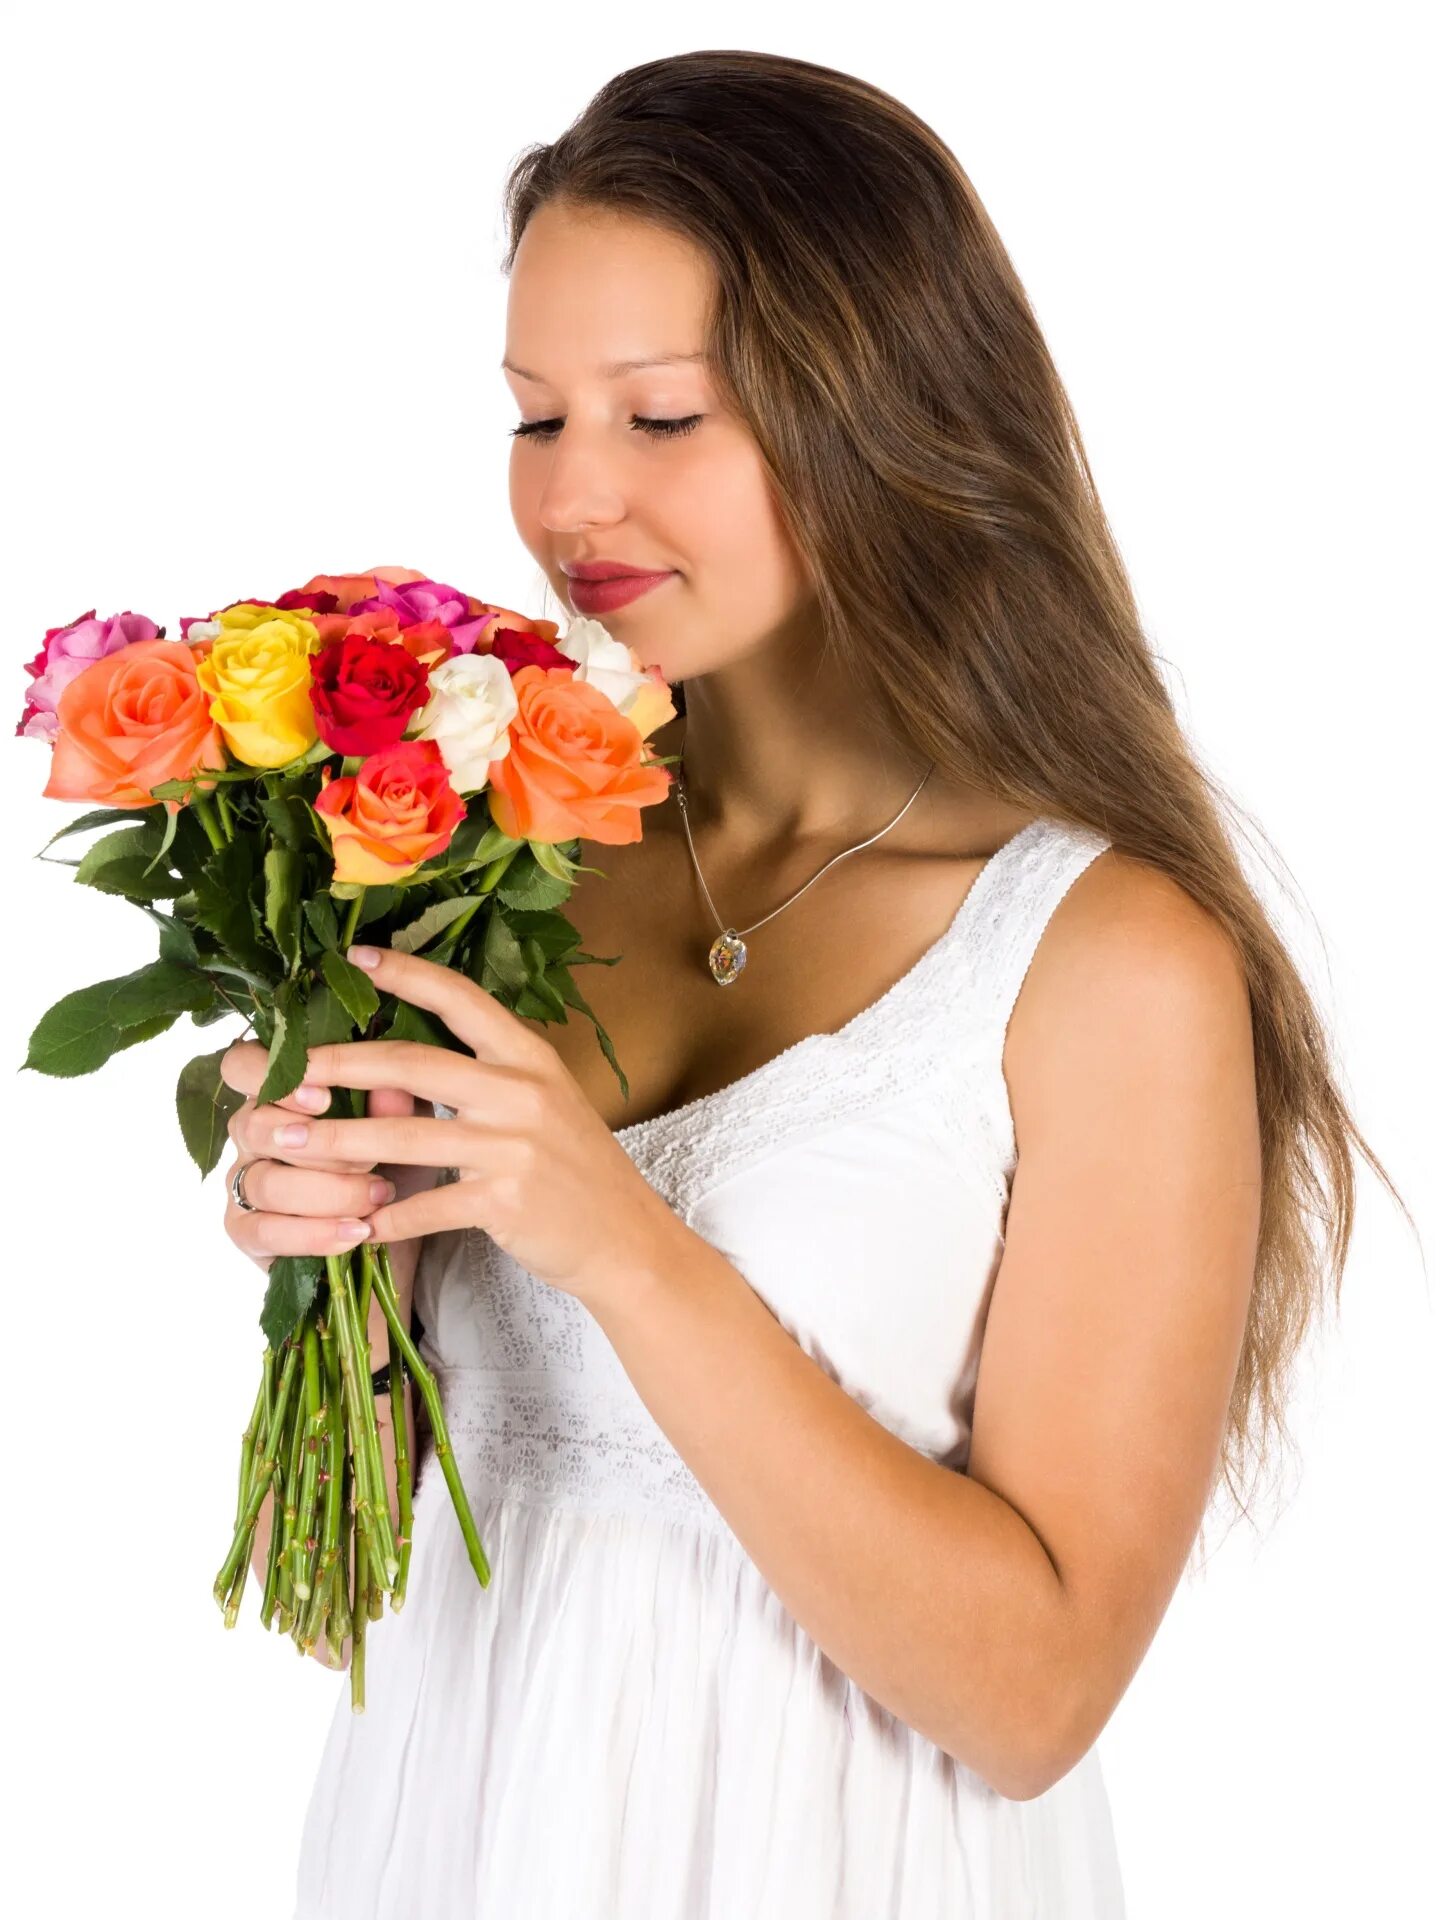 Цветы для женщины это. Букет "девушке". Букет цветов для женщины. Женщина с цветами. Женщина с букетом в руках.